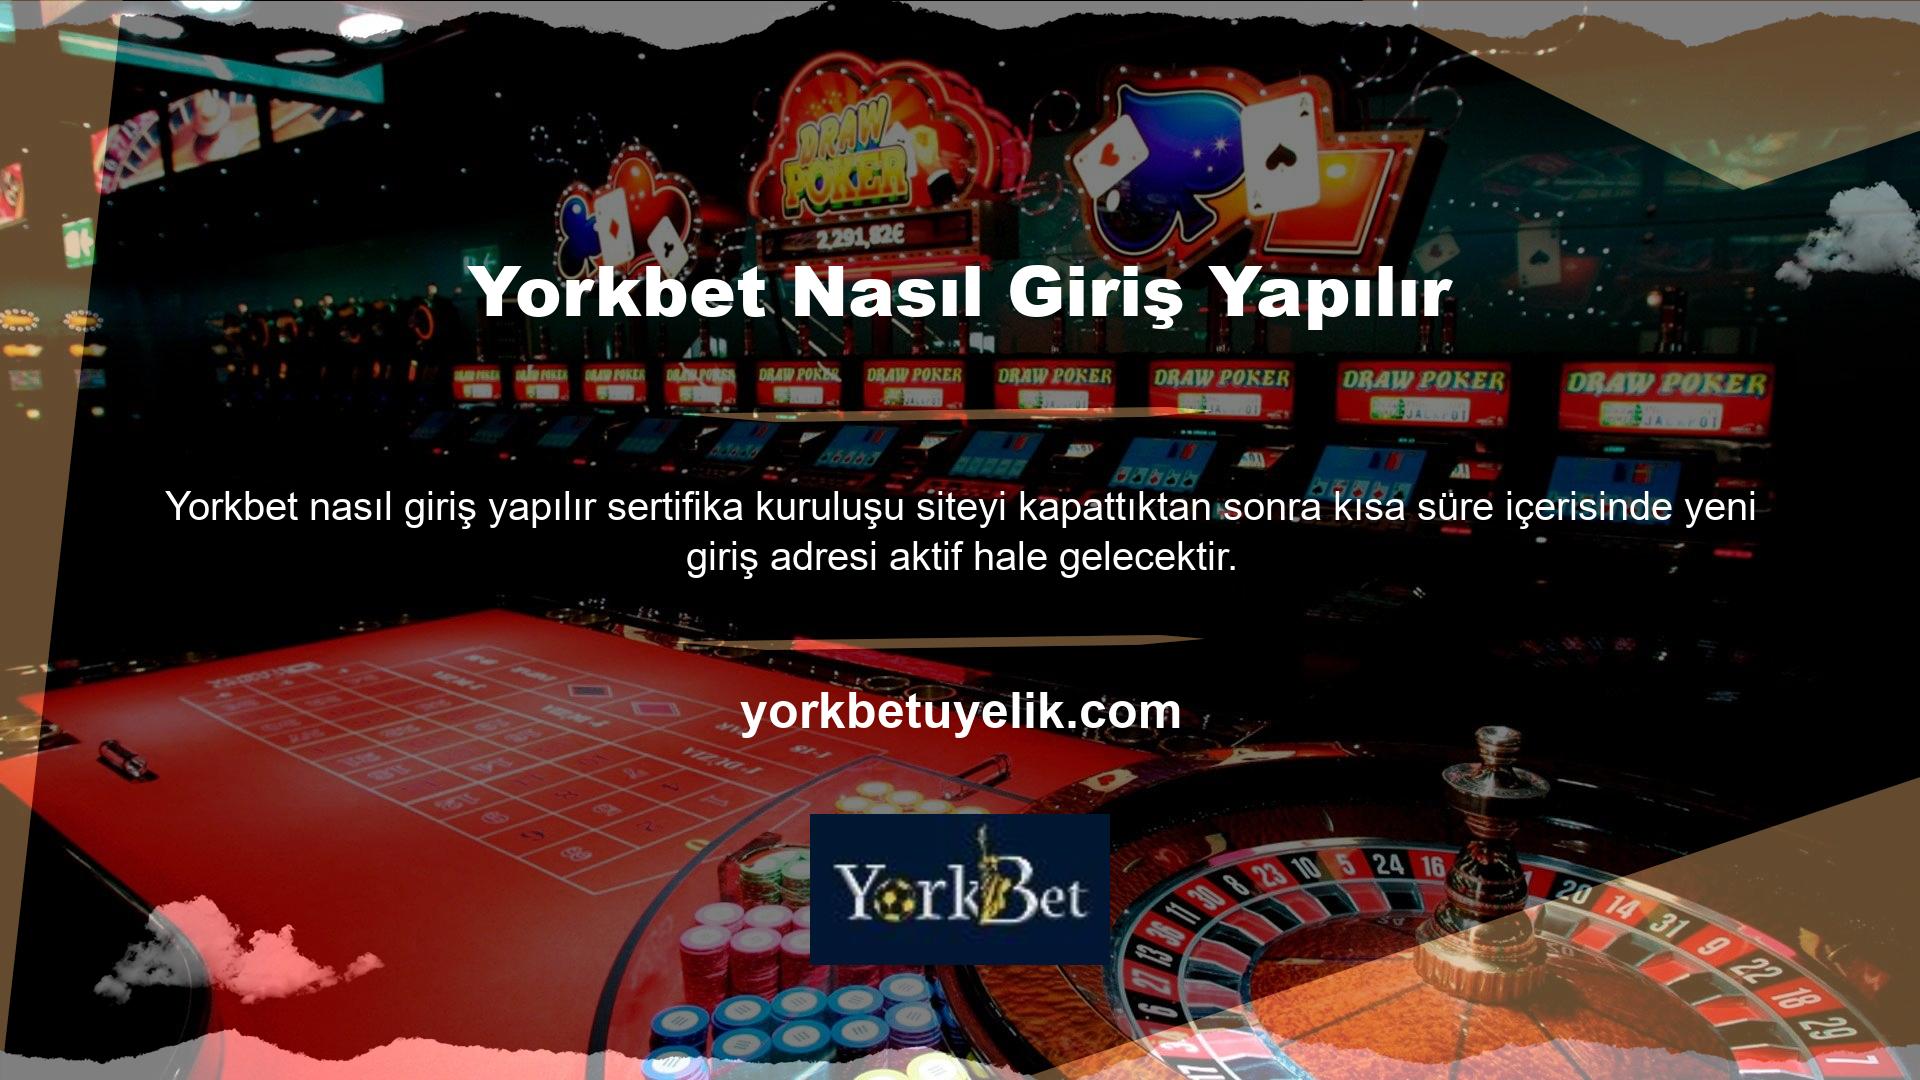 Yorkbet online bahis siteleri site yöneticileri tarafından sürekli kontrol edilmektedir